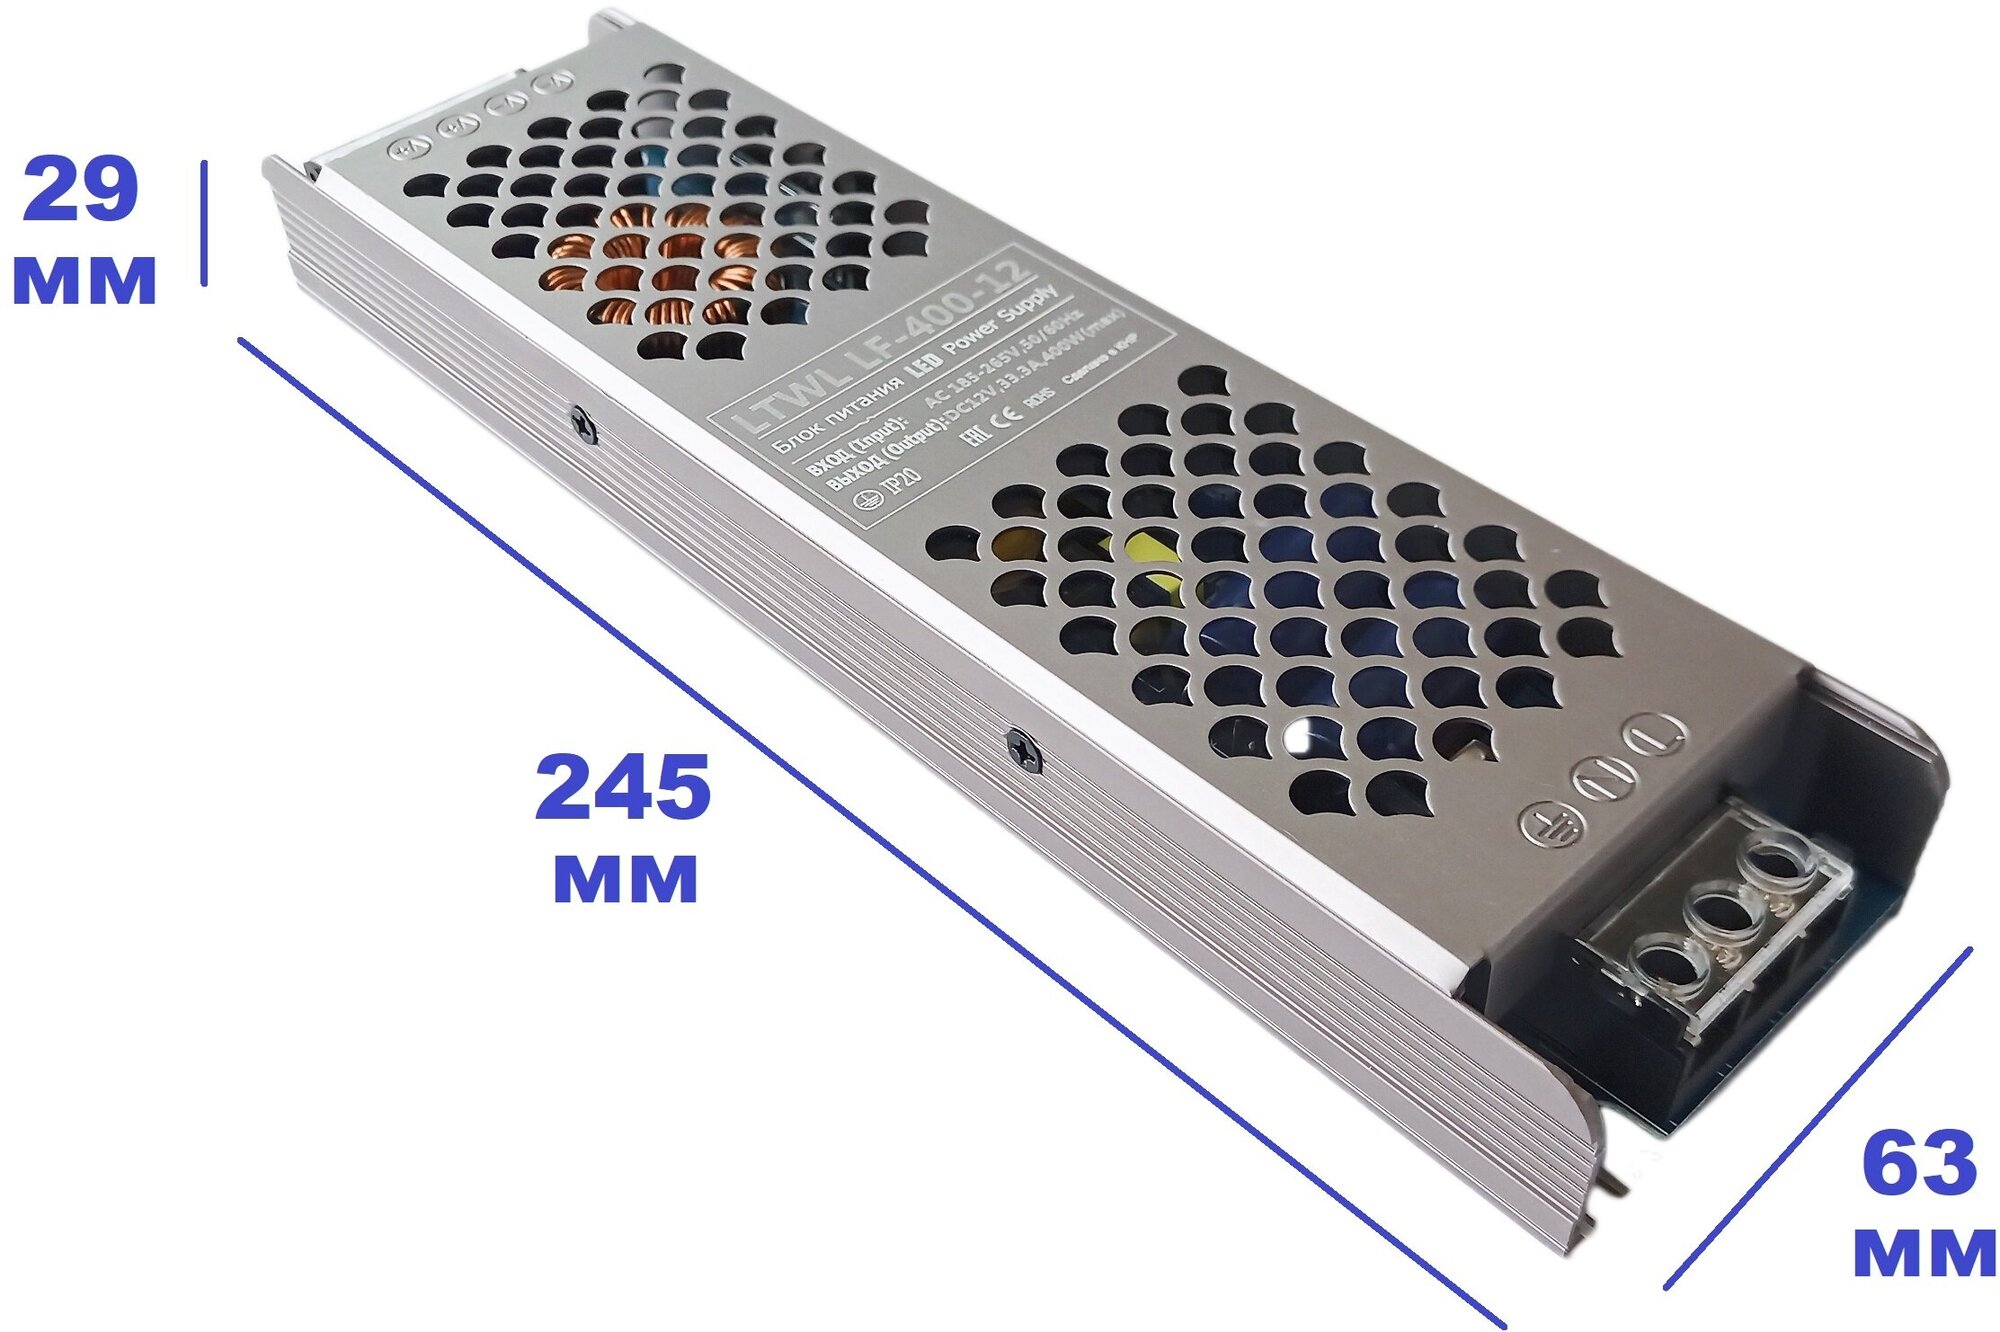 Мощный блок питания 12В 400 Вт - LTWL LF-400-12 - для светодиодных лент автомобильной аудиотехники. Рациональная компоновка надежная конструкция